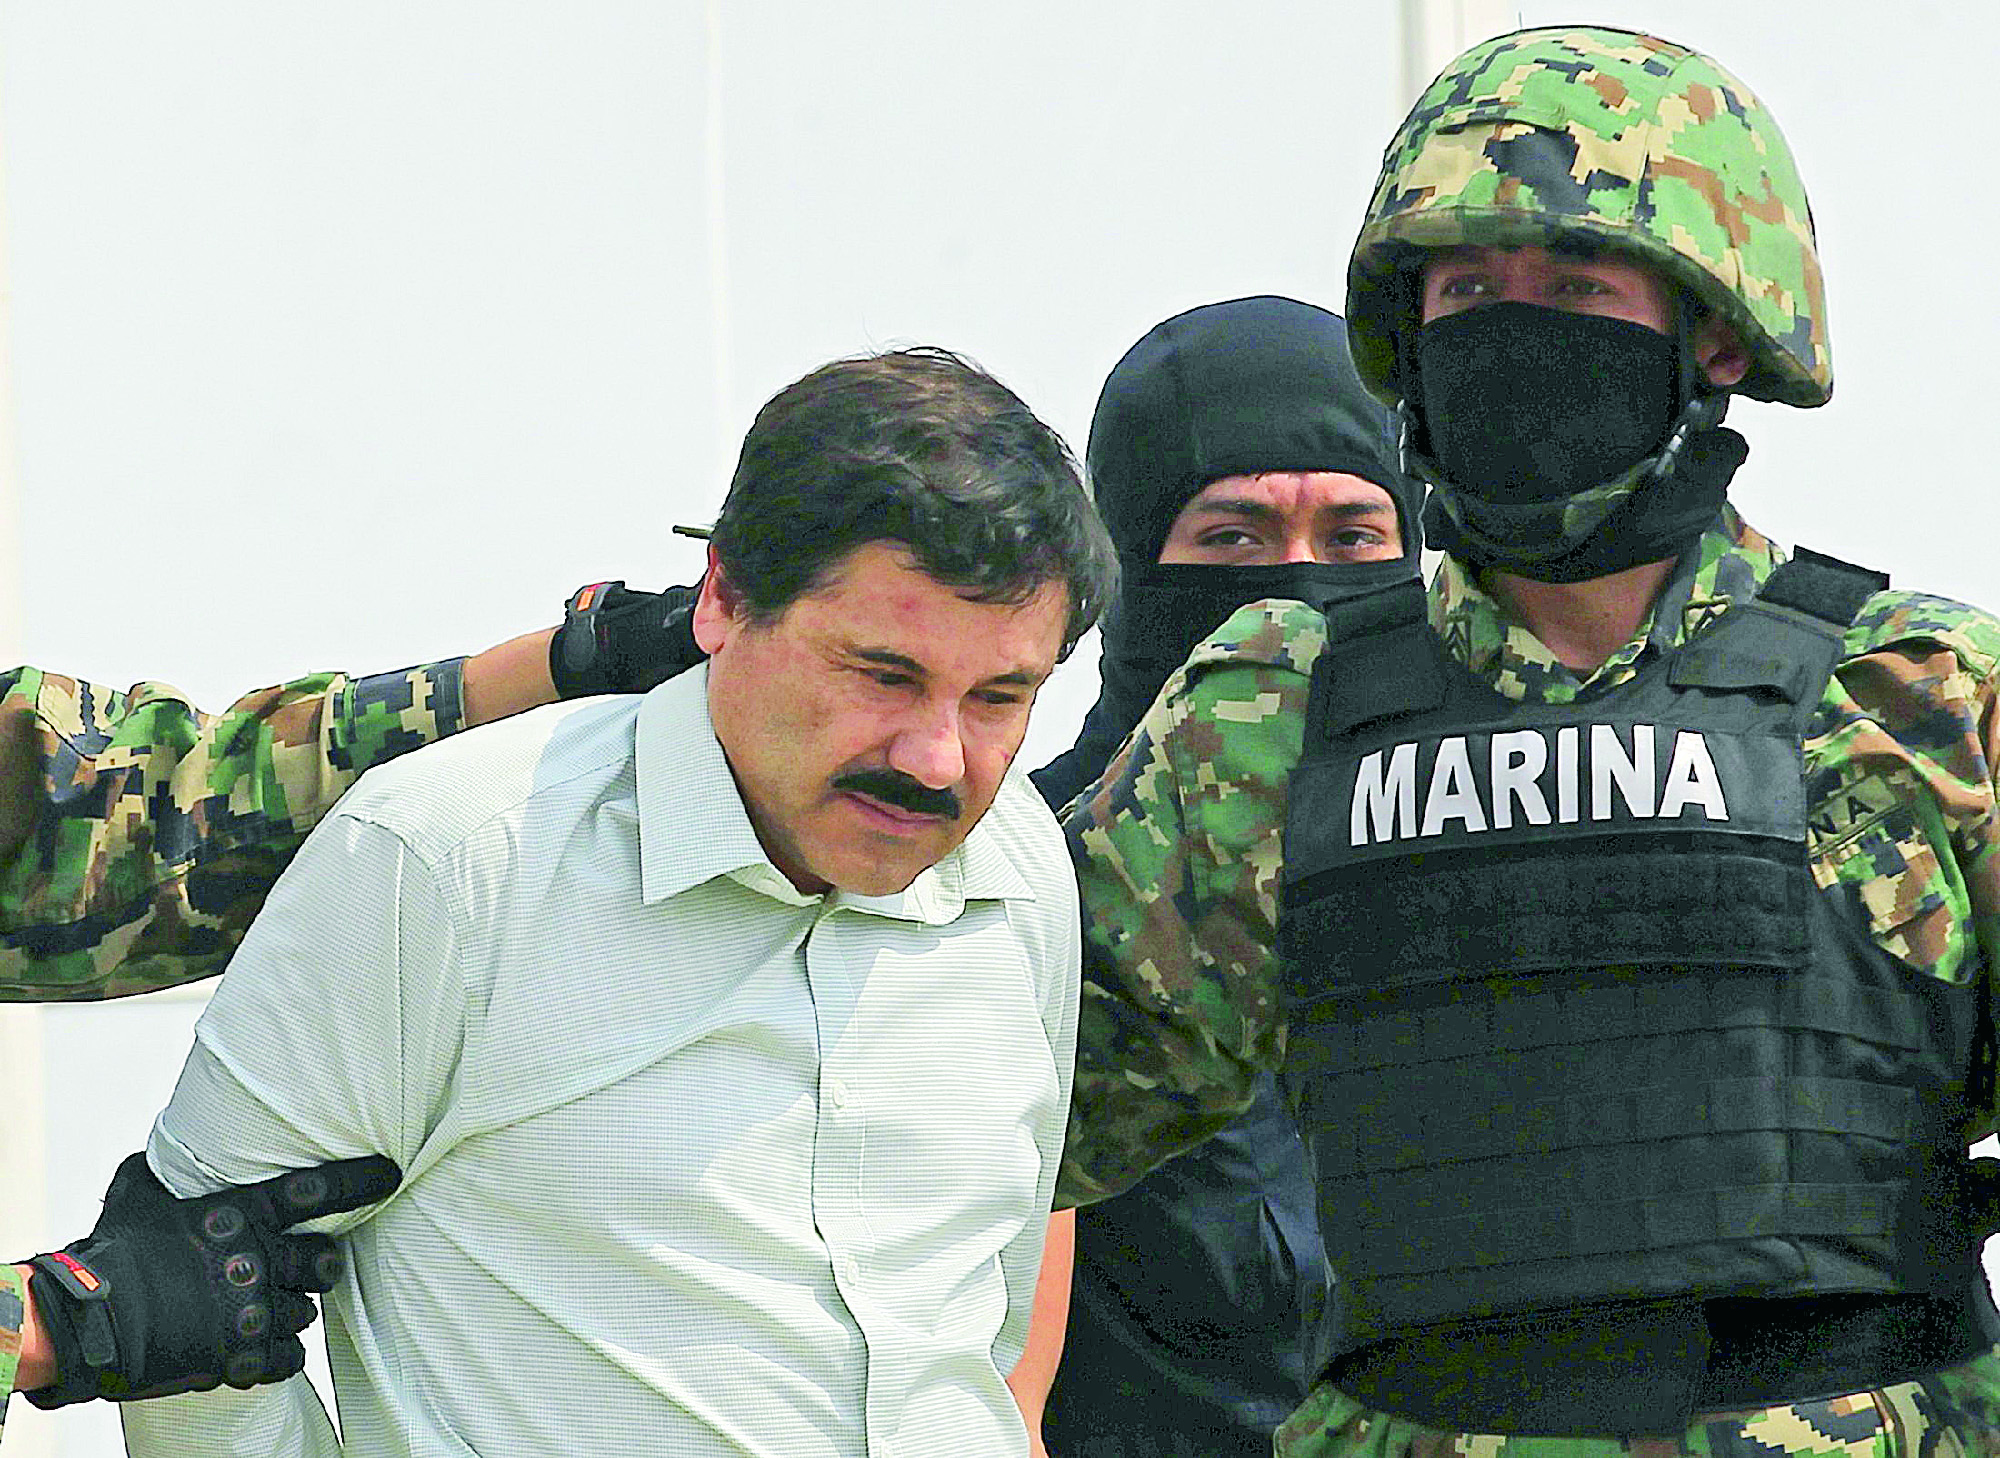 Duda 65% de encuestados que El Chapo sea recapturado